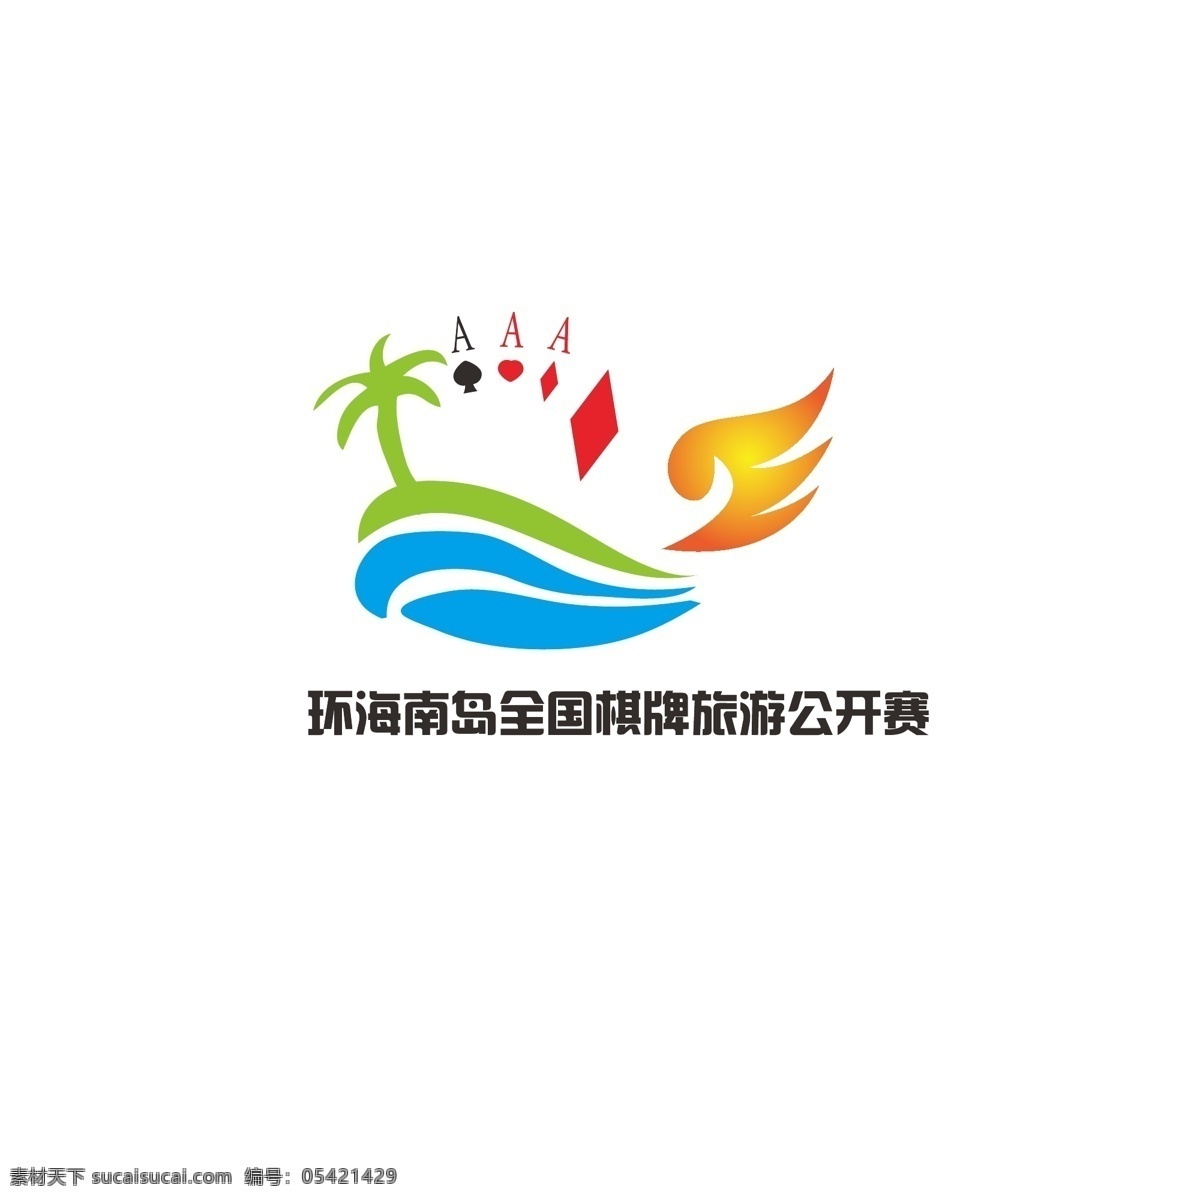 游戏logo logo 游戏 旅游 简约